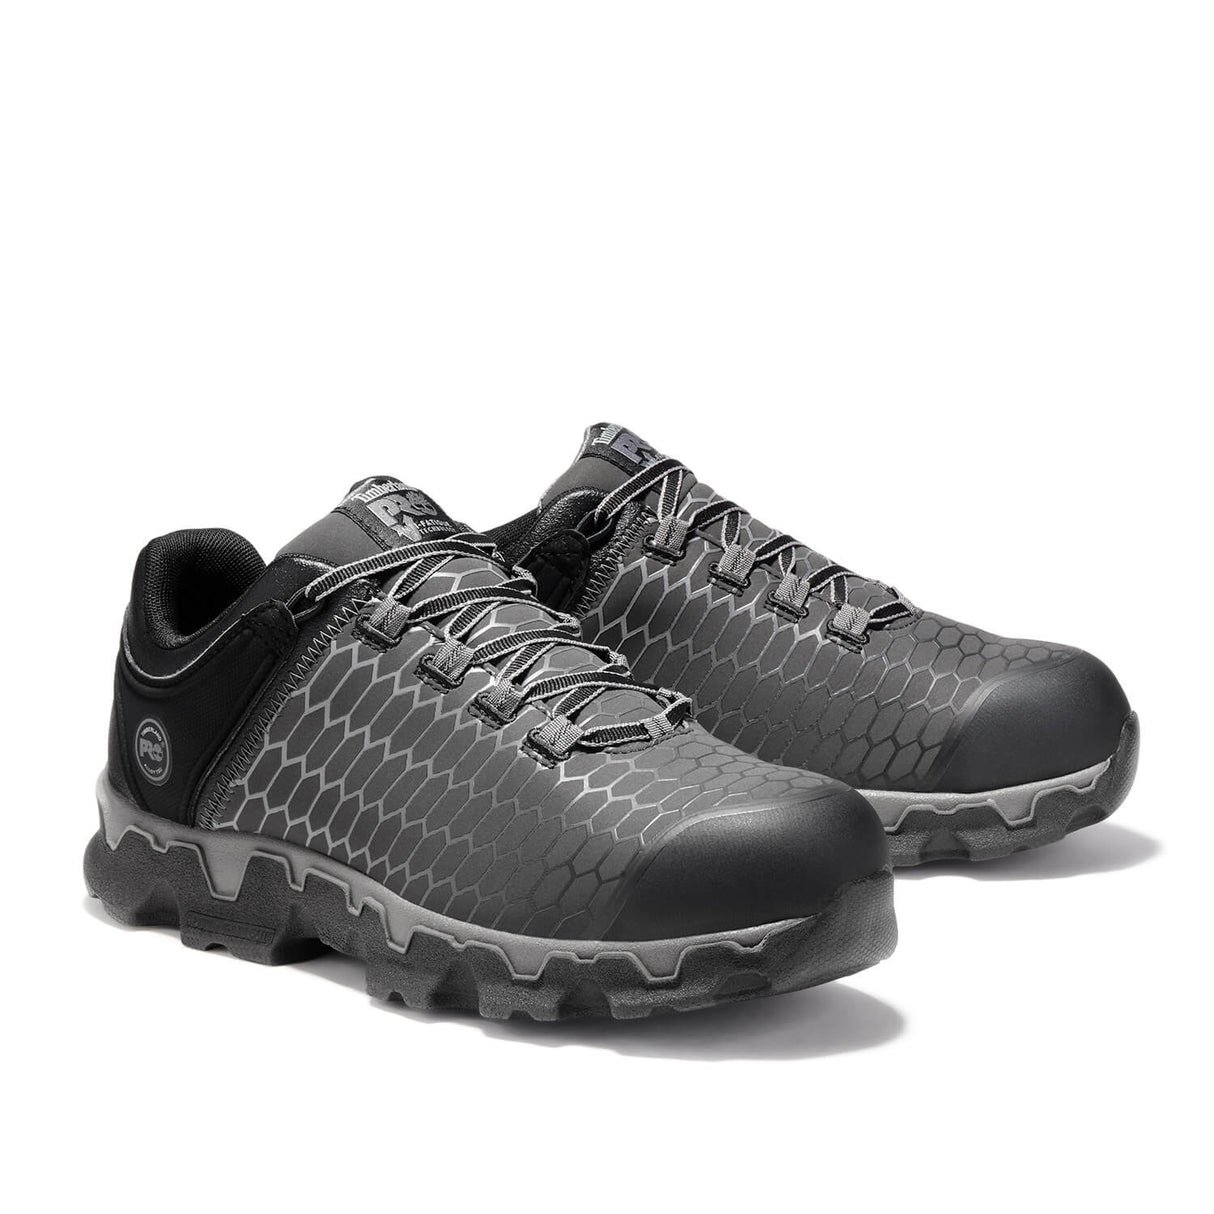 Timberland PRO-Powertrain Sport Men's Alloy-Toe Shoe Black/Grey-Steel Toes-2